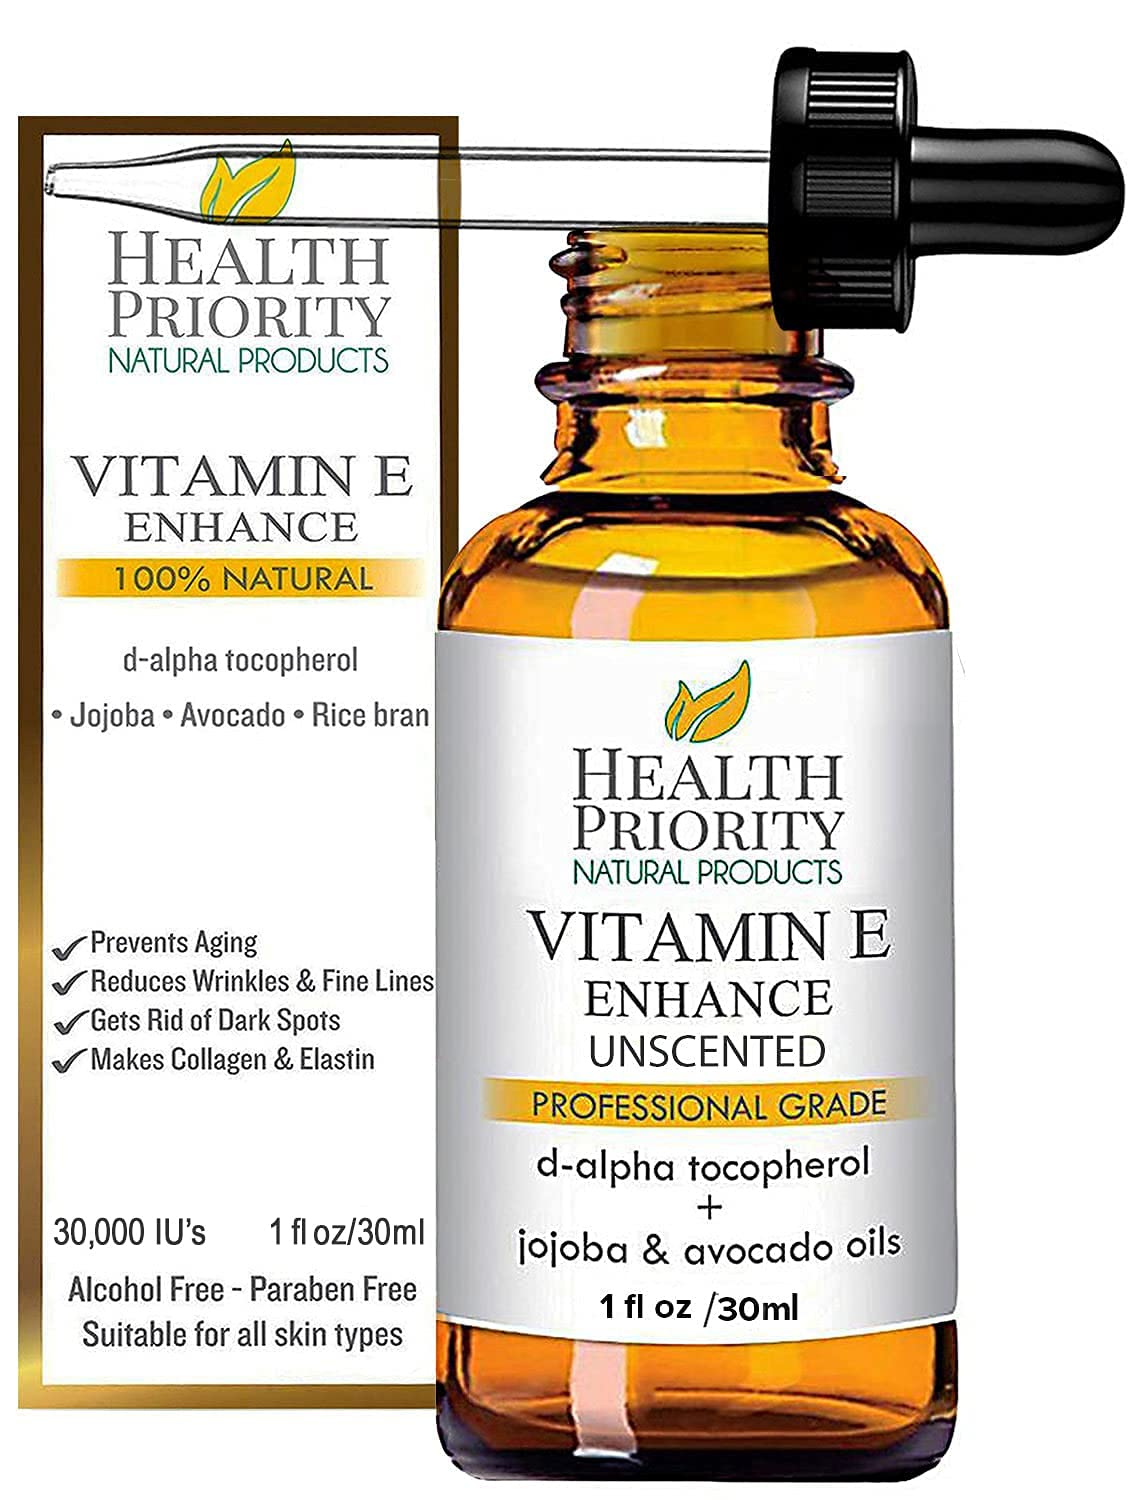 Organic Vitamin E Oil for Skin  Scars |100% Pure Natural Vitamin E Serum Hand Made in South Carolina | 15000 IU Vitamin E for Face  Hair| Non-GMO, Gluten  Cruelty Free, Vegan | Unscented 1 Fl Oz